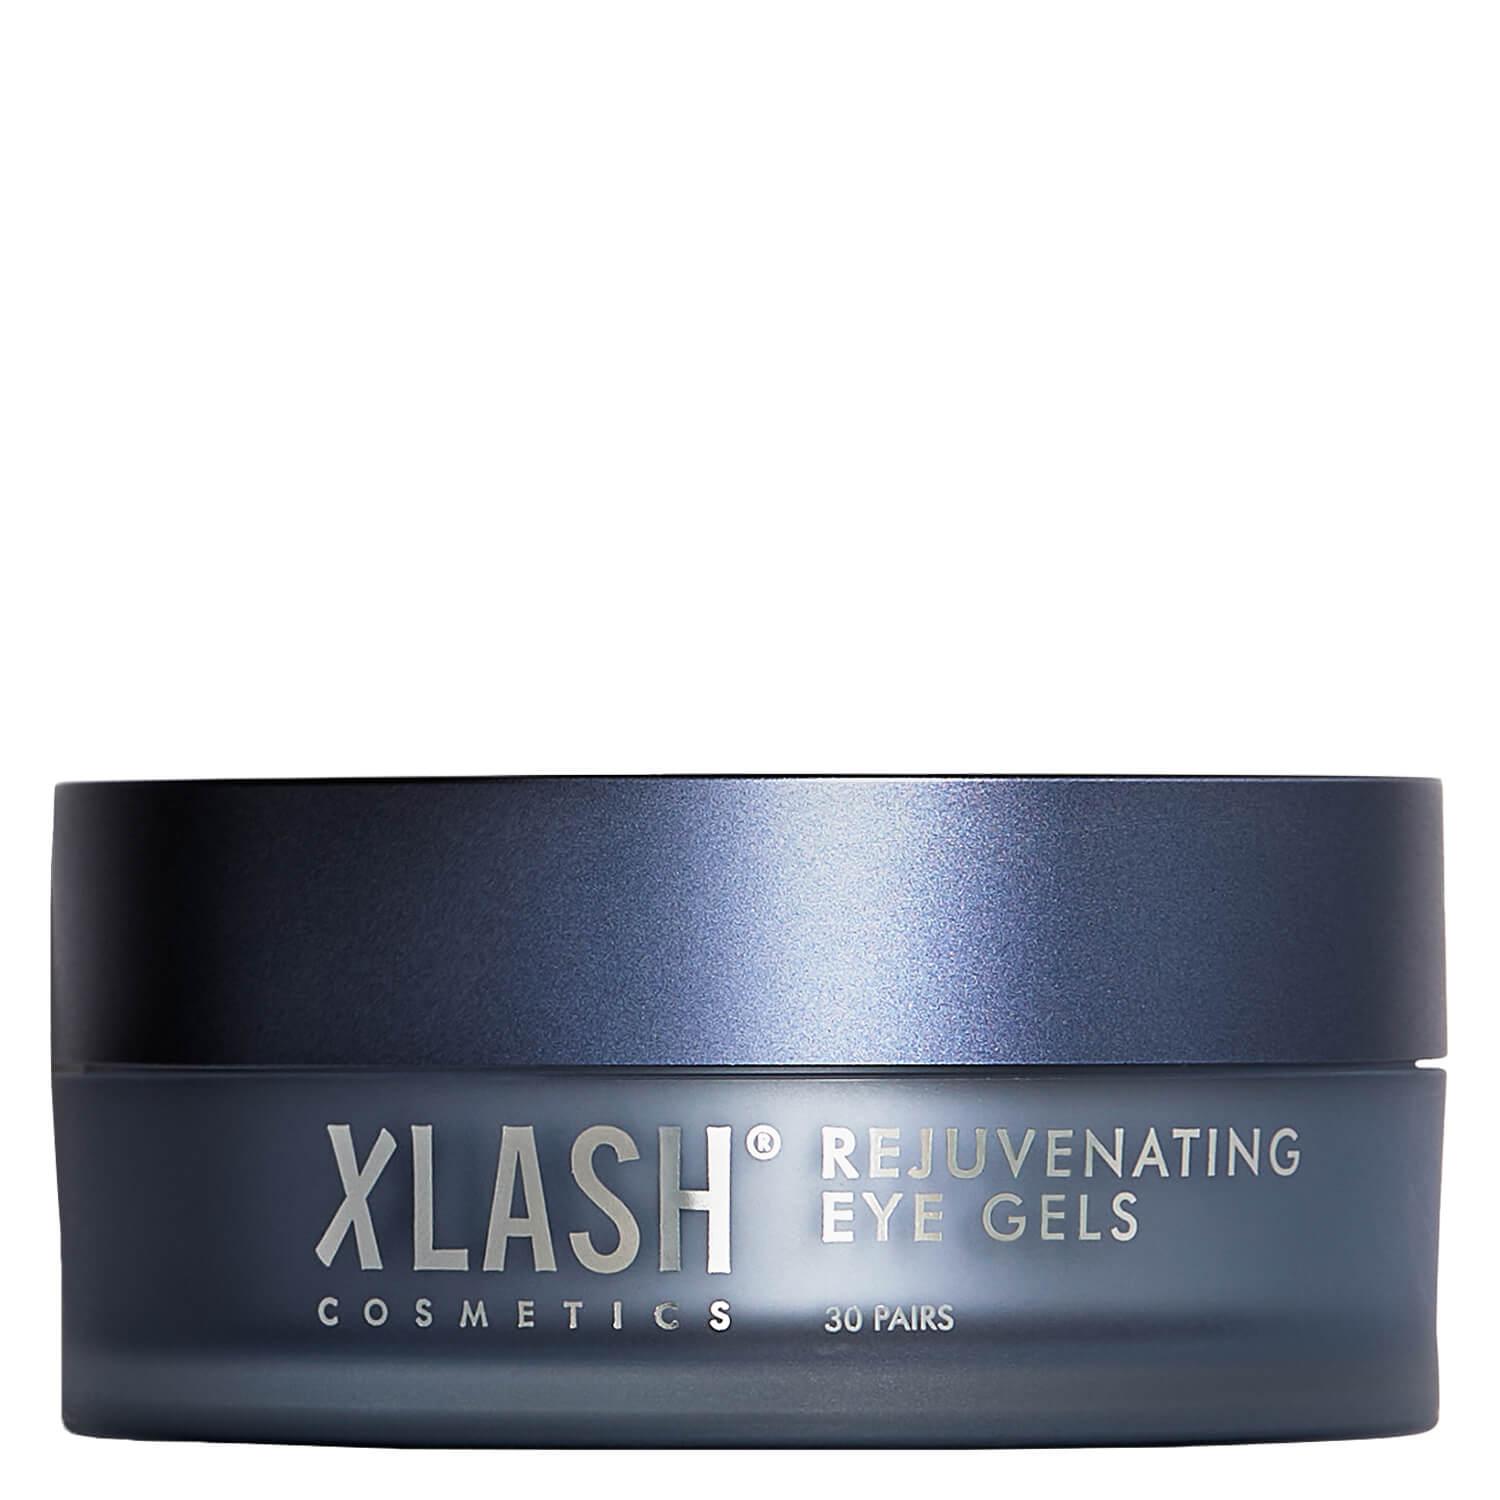 Xlash - Rejuvenating Eye Gel Pads